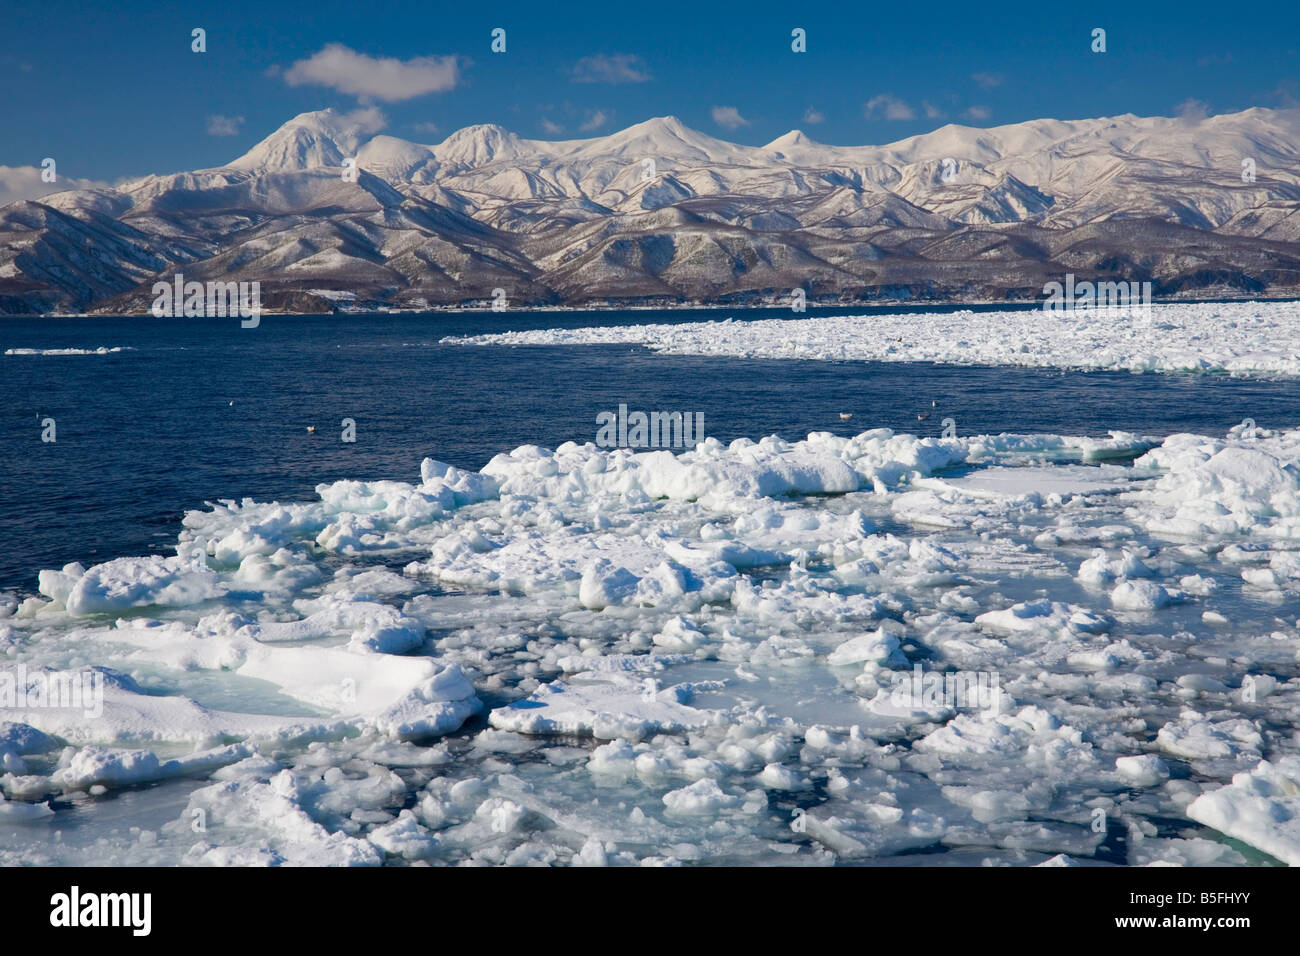 Hokkaido, Japón: témpanos de hielo en el Estrecho de Nemuro con los picos nevados de las montañas de la Península de Shiretoko en la distancia Foto de stock